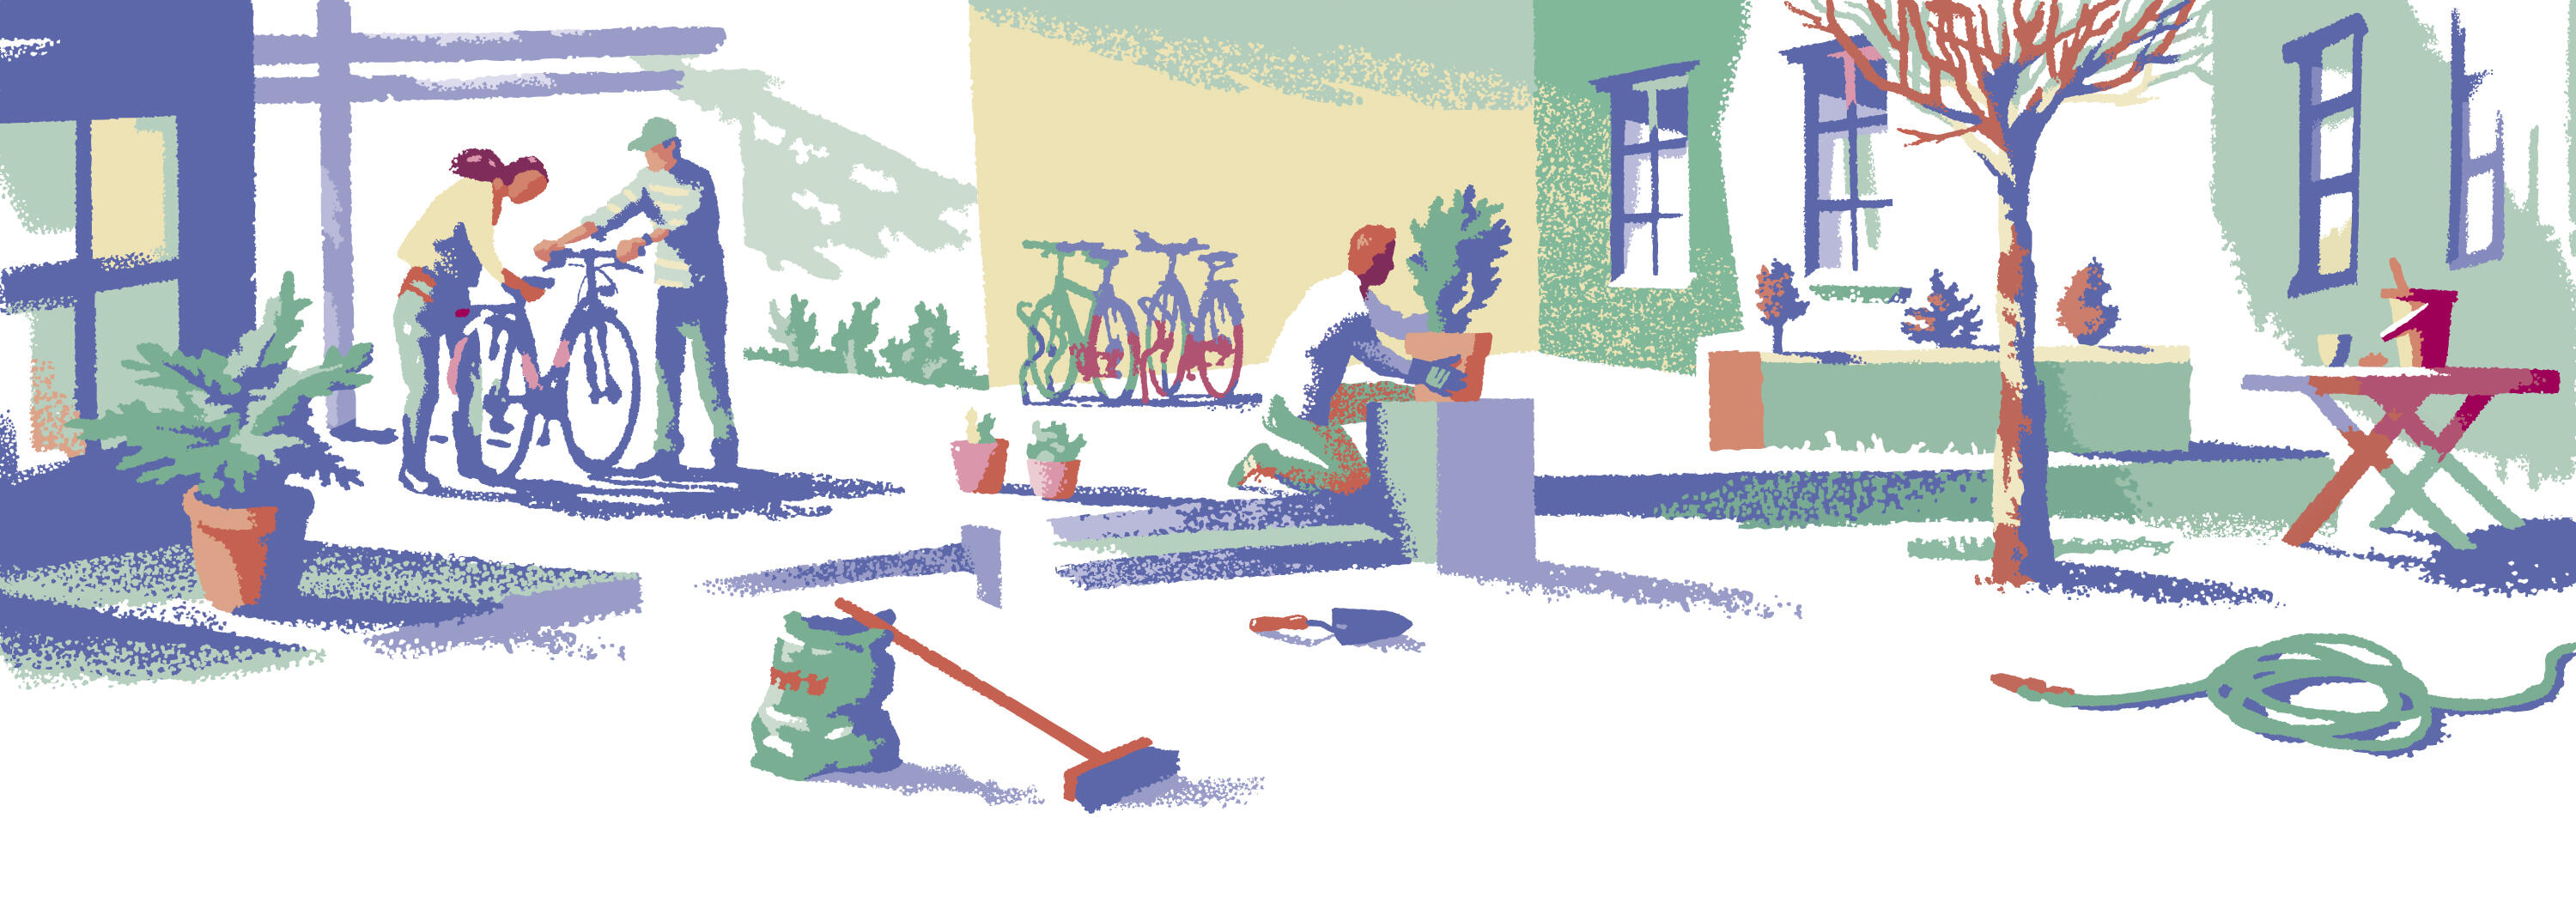 Illustrasjon: "Vår i Tyrili" av Trond Bredesen. Mennesker som fikser sykler, planter og gjør andre vårsysler i en bakgård.